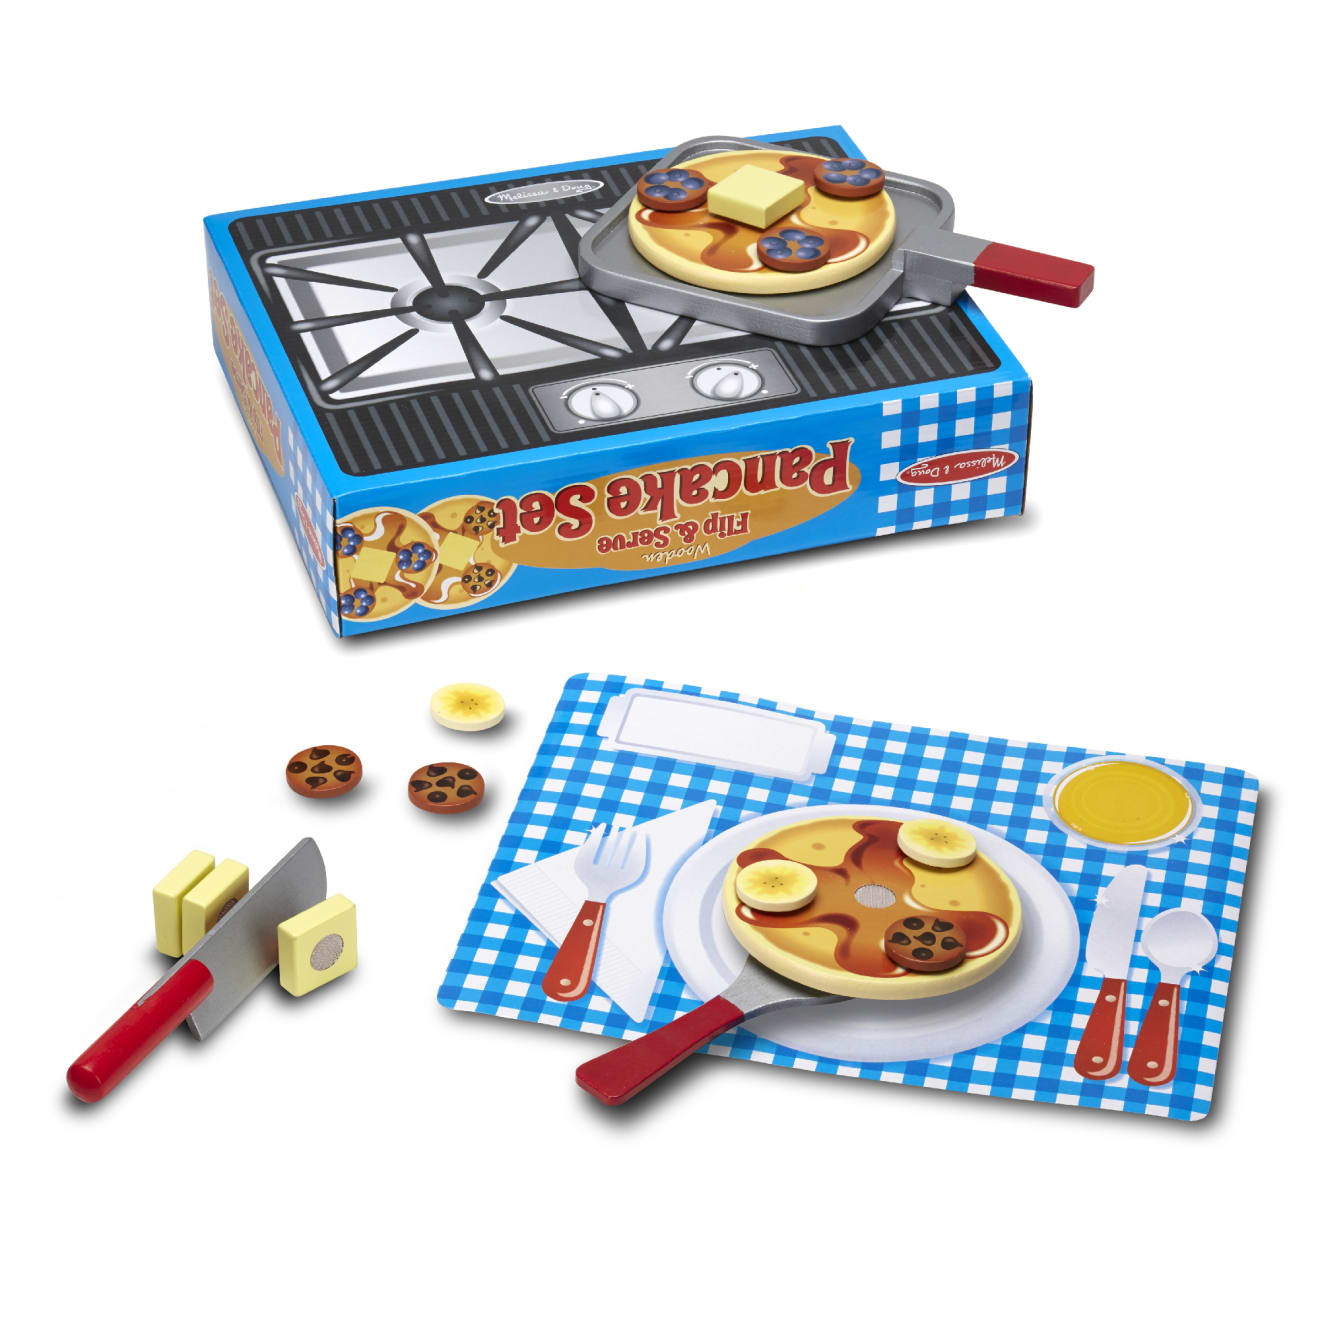 Play Pancake Set | Toy Pancake Set